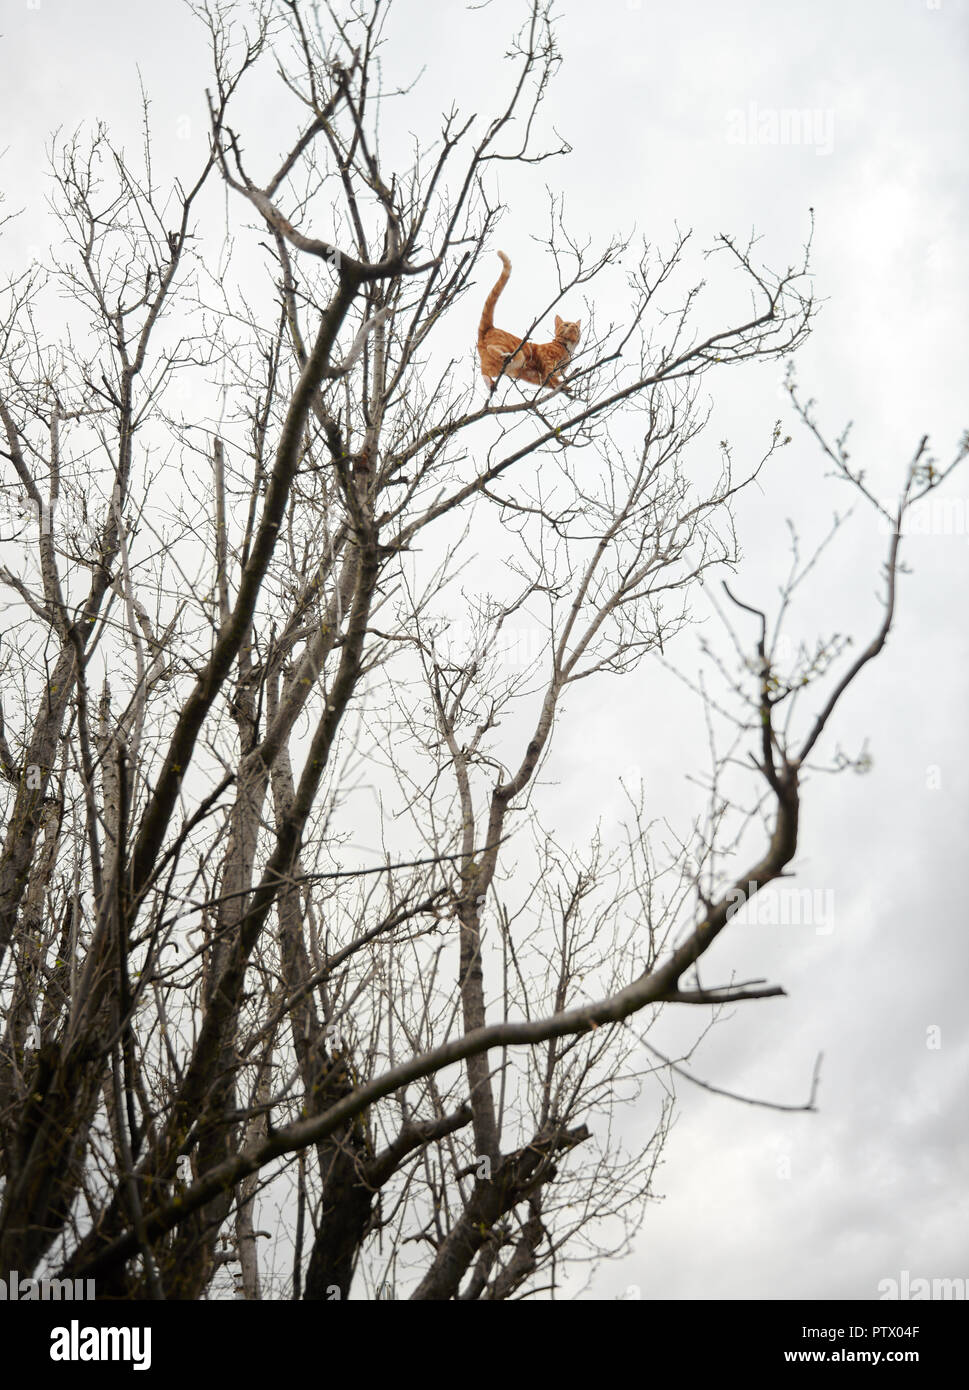 Aventurero loco jengibre rojo gato atigrado encaramado en lo alto de un árbol de invierno de ramas. Foto de stock